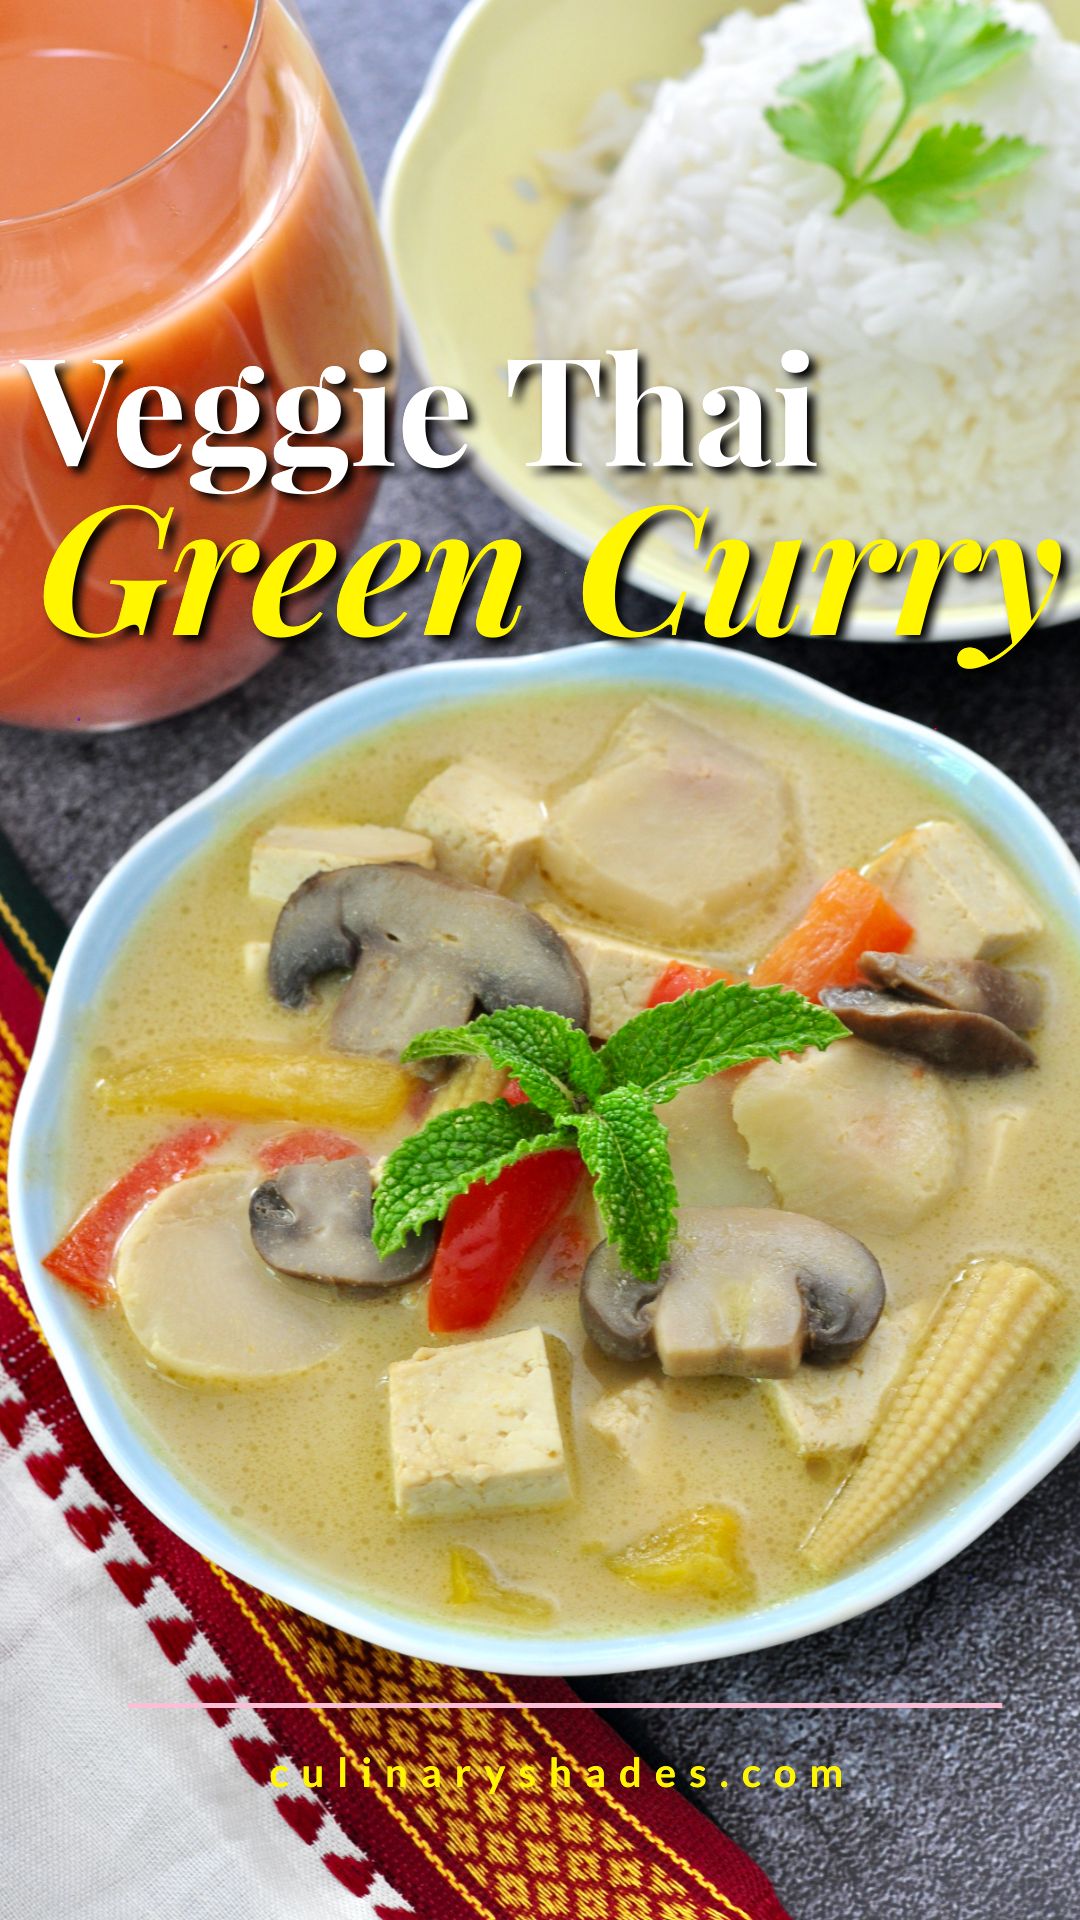 Vegan Thai Green Curry - Culinary Shades